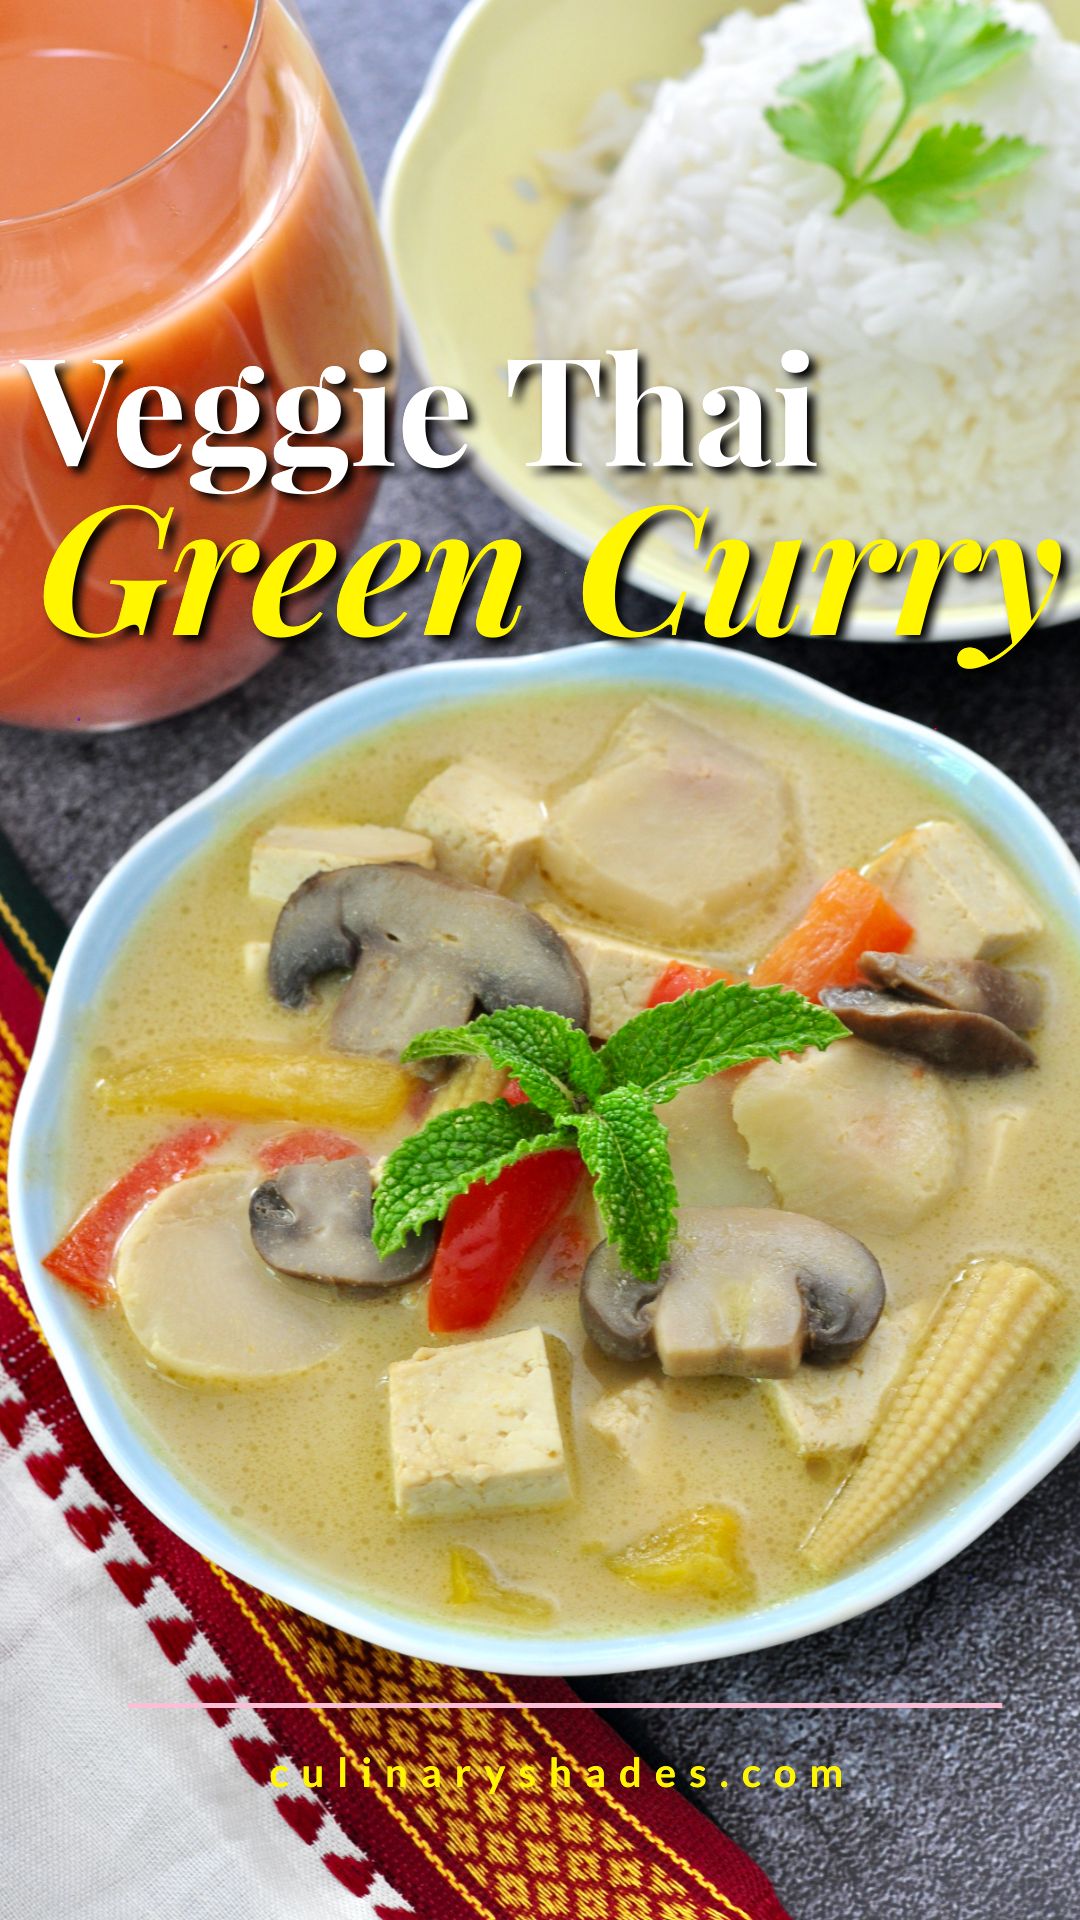 Vegan Thai Green Curry - Culinary Shades